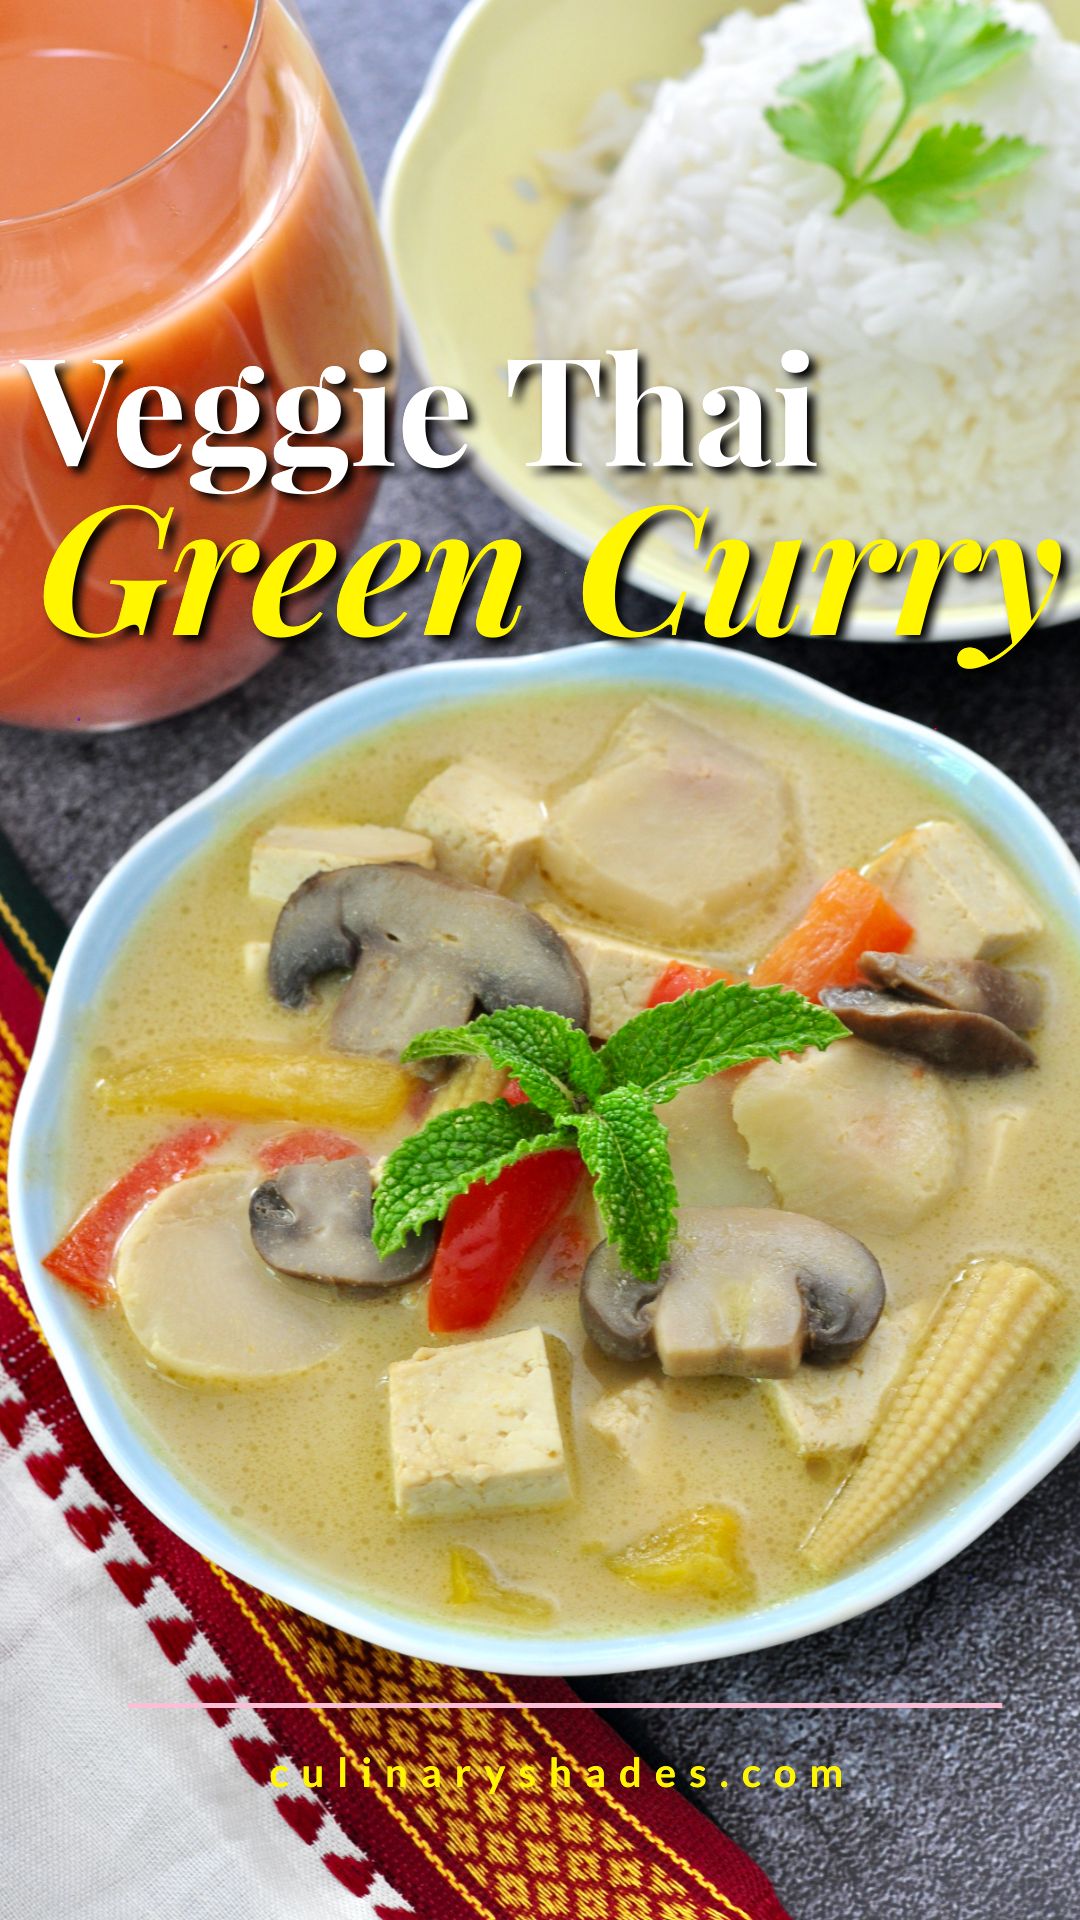 Vegan Thai Green Curry - Culinary Shades